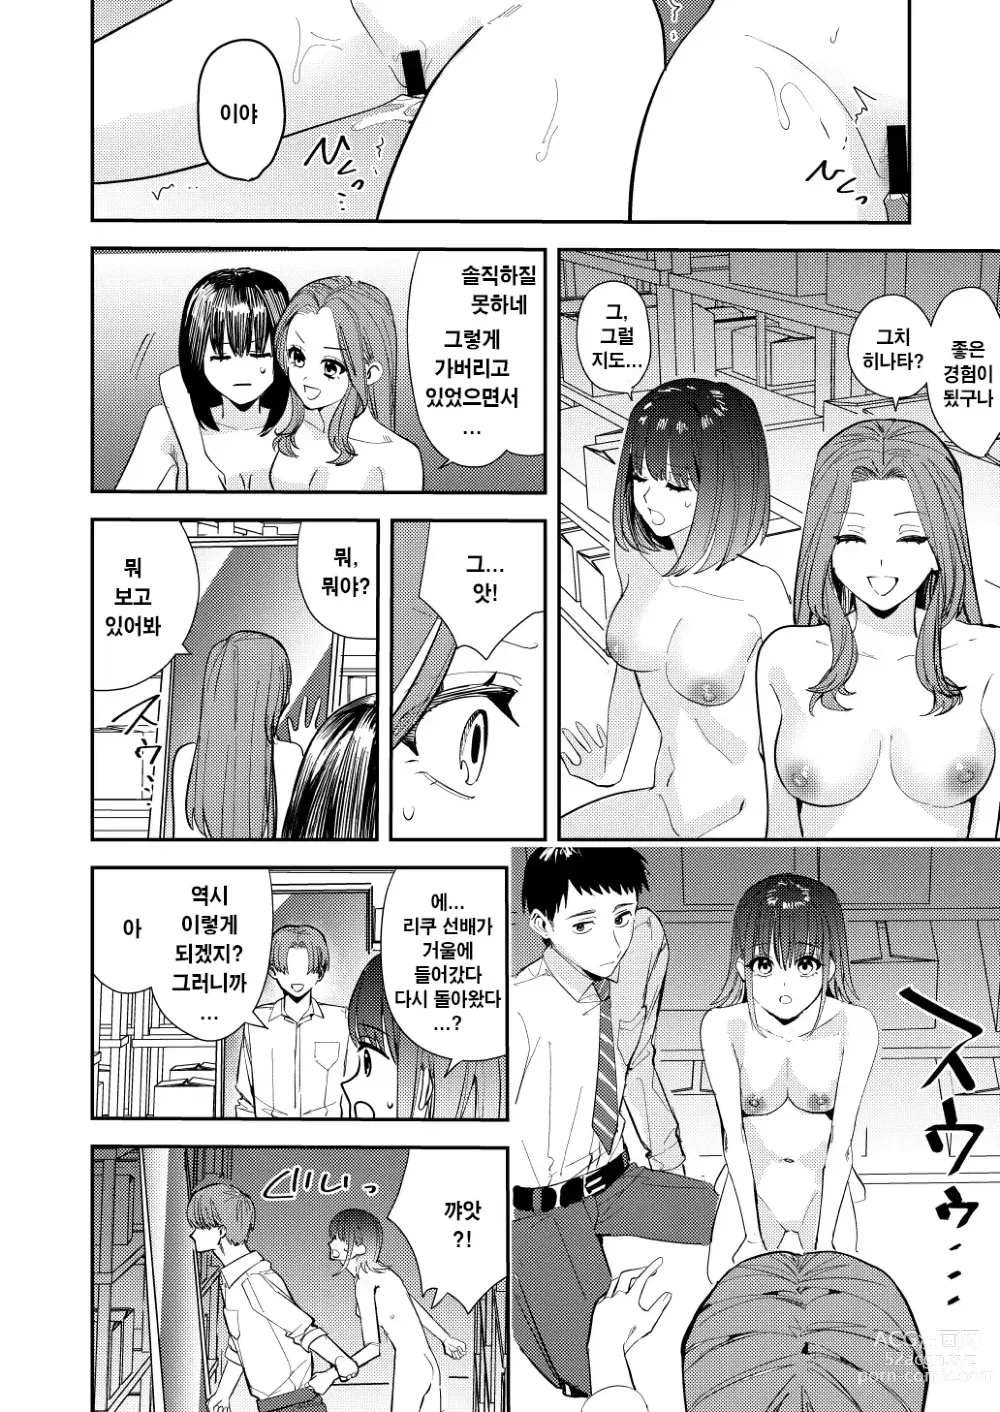 Page 31 of doujinshi 나는 거울의 나라에서 여자로 바뀐다 ~성별 반전 세계에서 여자의 쾌감을 탐하는 이야기~